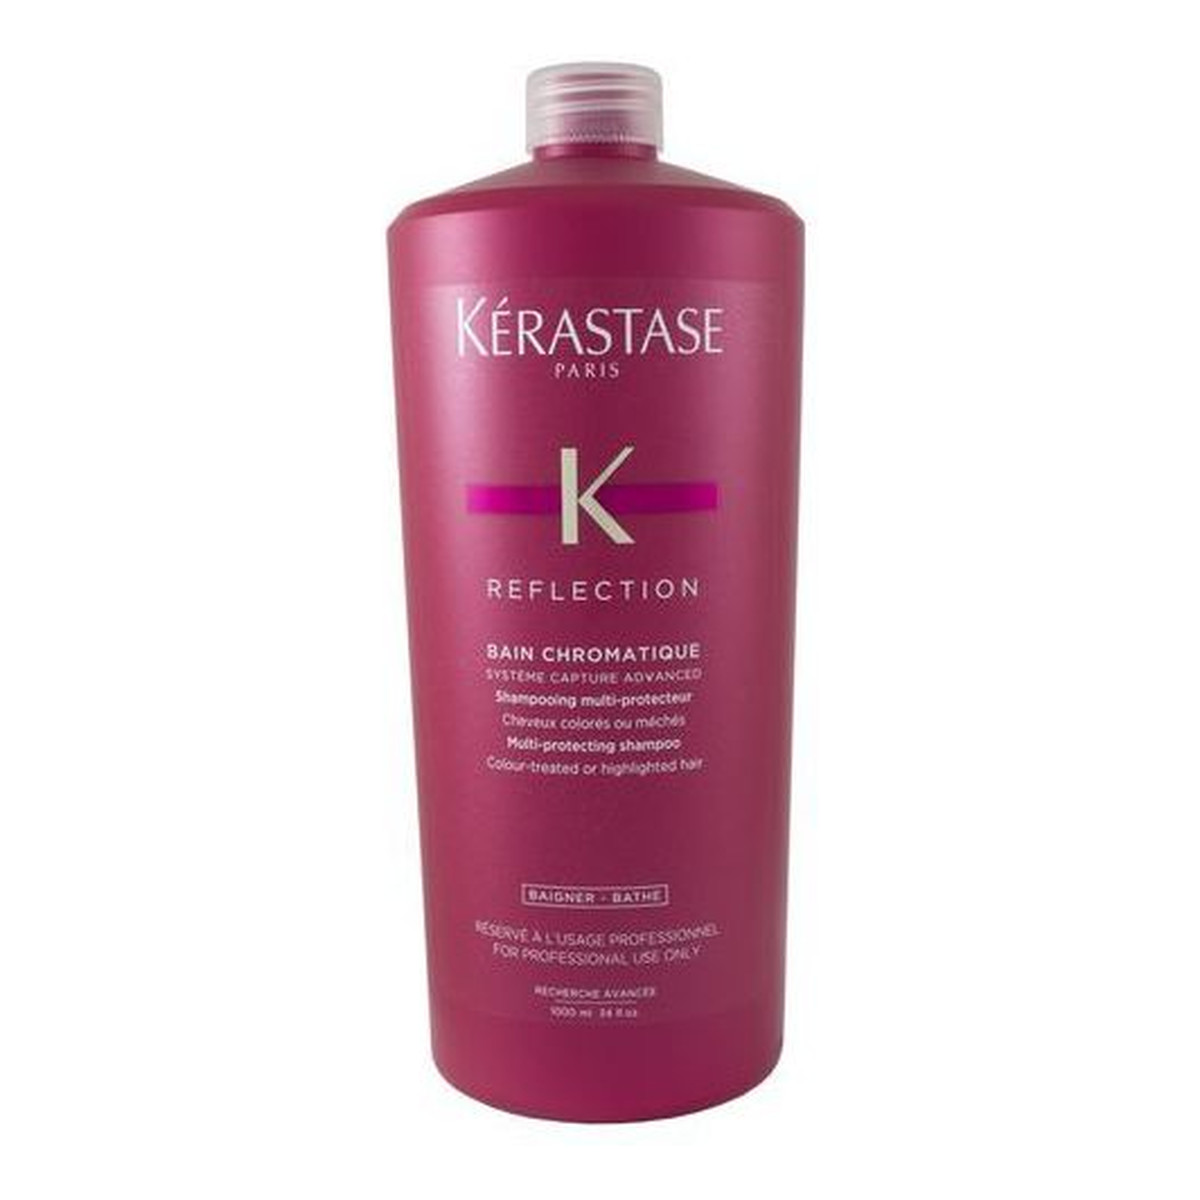 Kerastase Reflection Bain Chromatique Multi-Protecting Shampoo Szampon do włosów farbowanych lub z pasemkami 1000ml